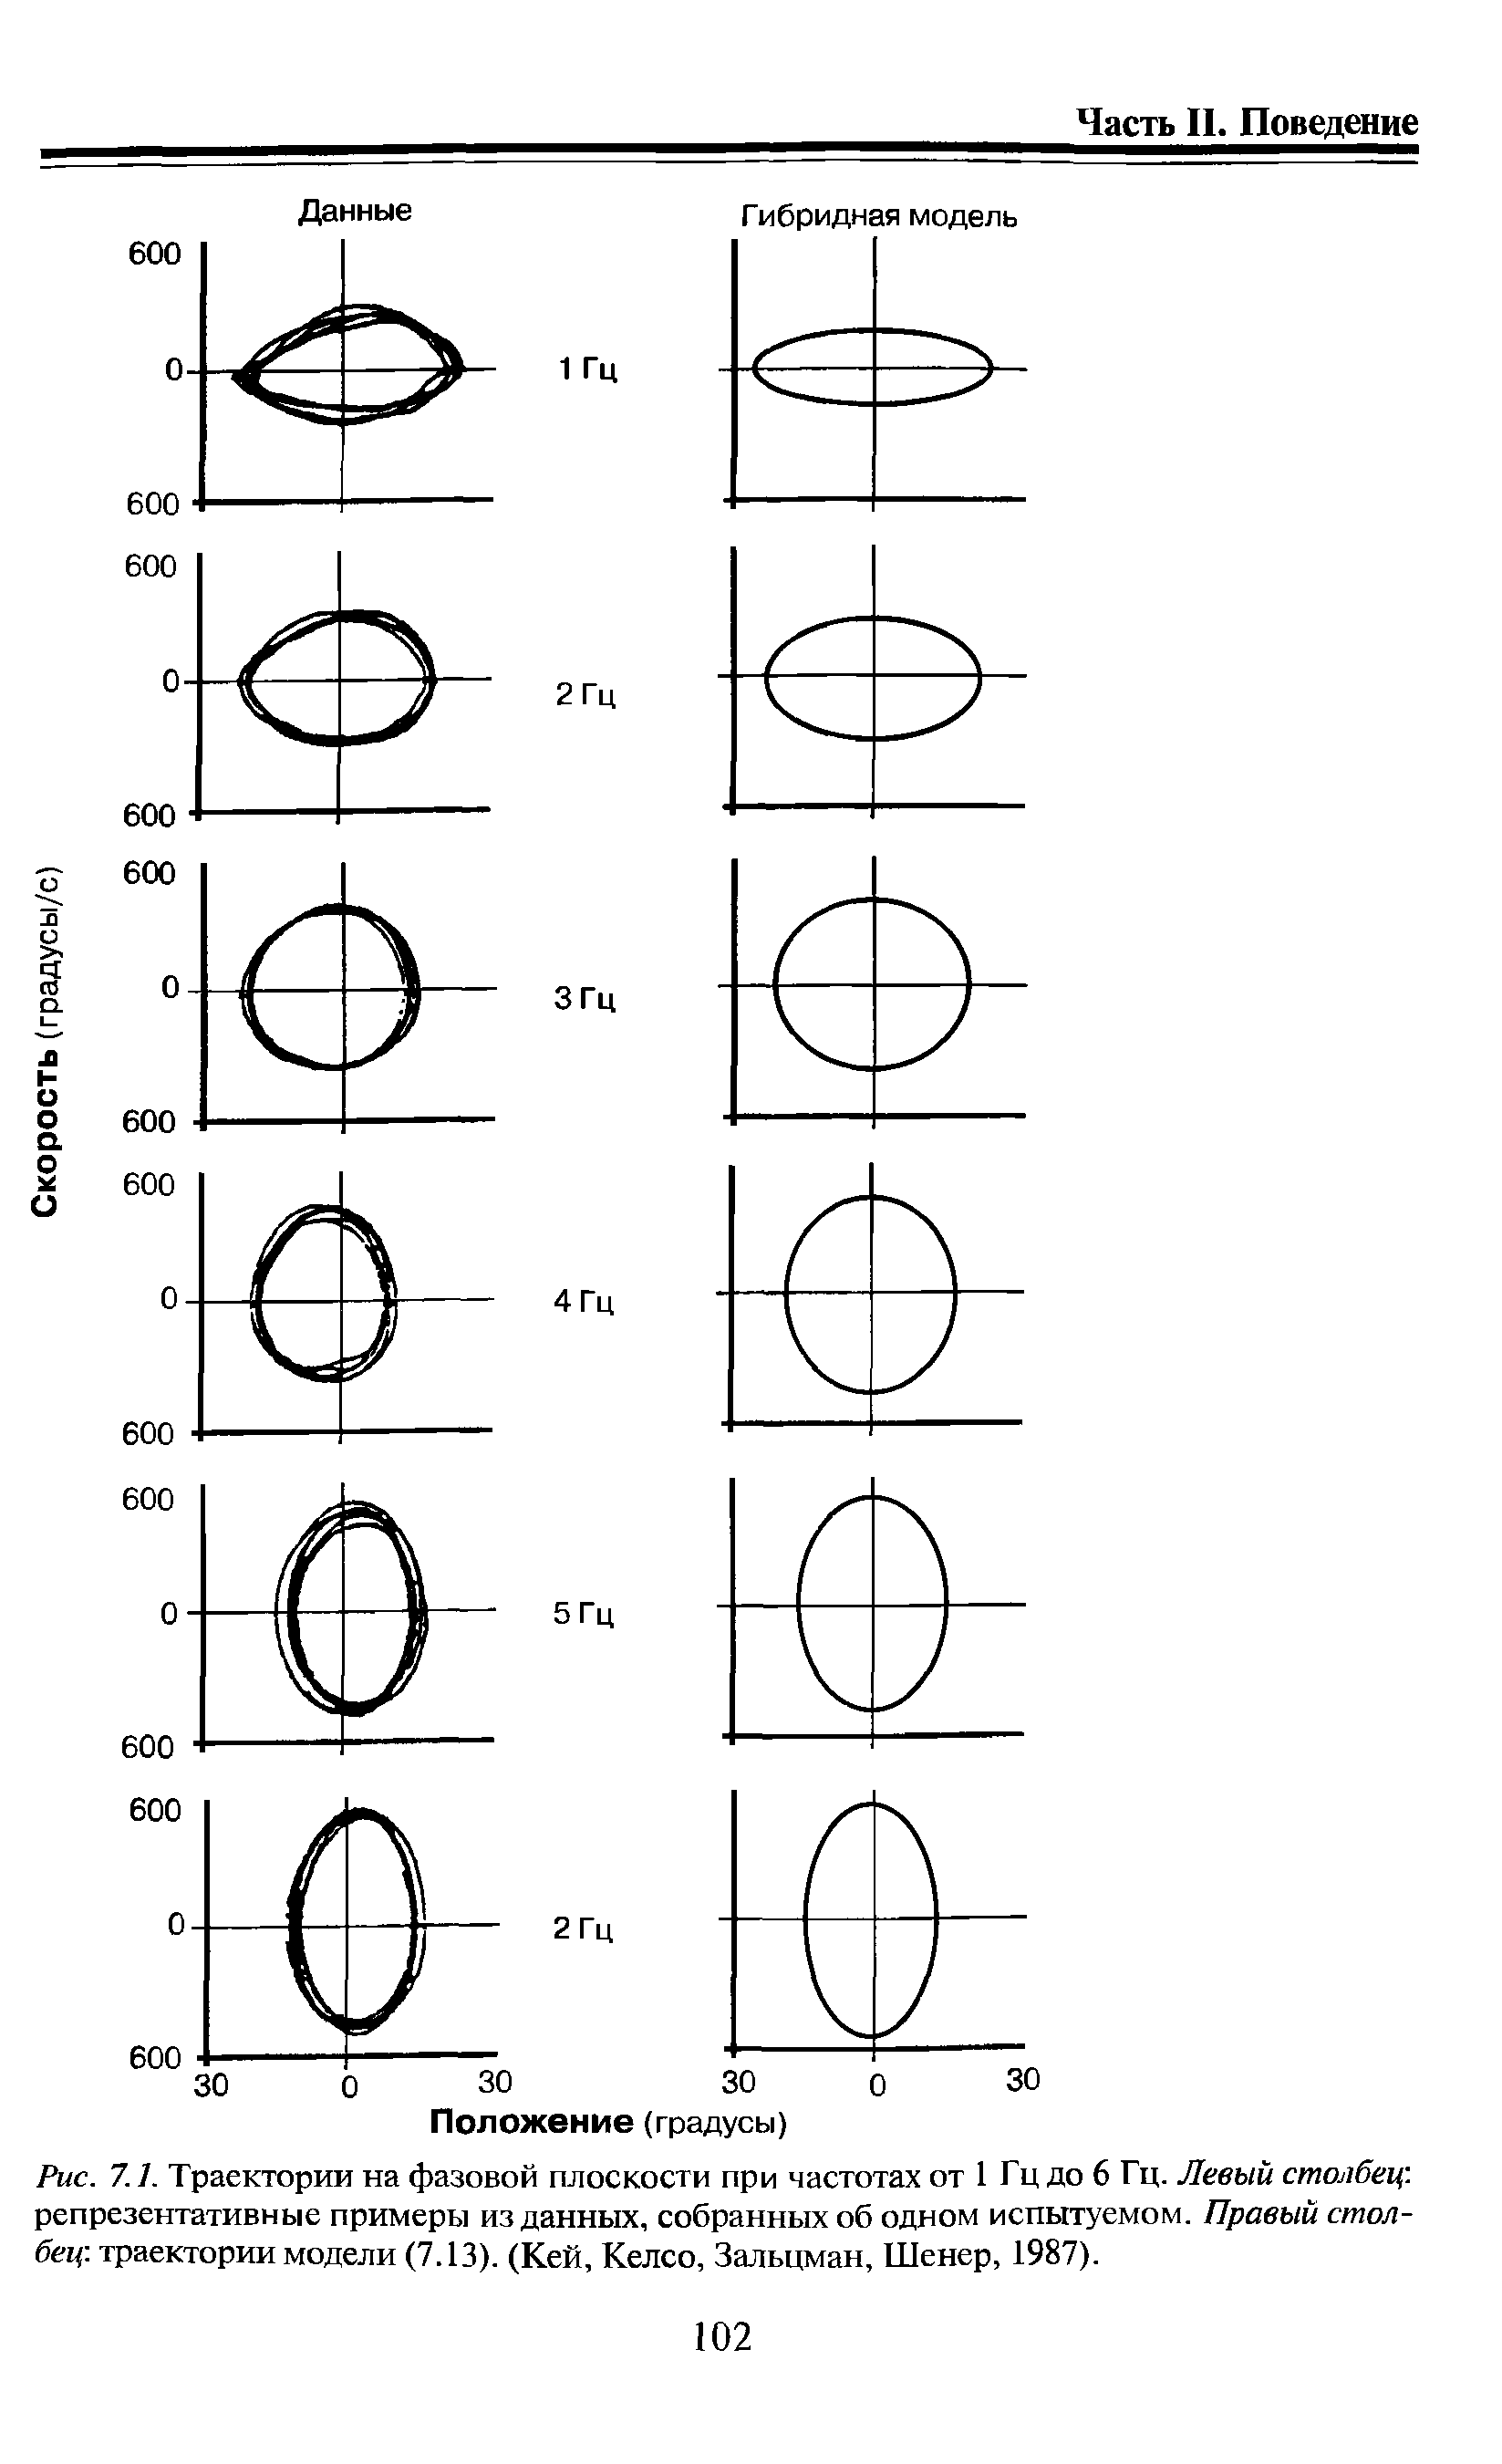 Рис. 7.1. Траектории на фазовой плоскости при частотах от 1 Гц до 6 Гц. Левый столбец. репрезентативные примеры изданных, собранных об одном испытуемом. Правый столбец траектории модели (7.13). (Кей, Келсо, Зальцман, Шенер, 1987).